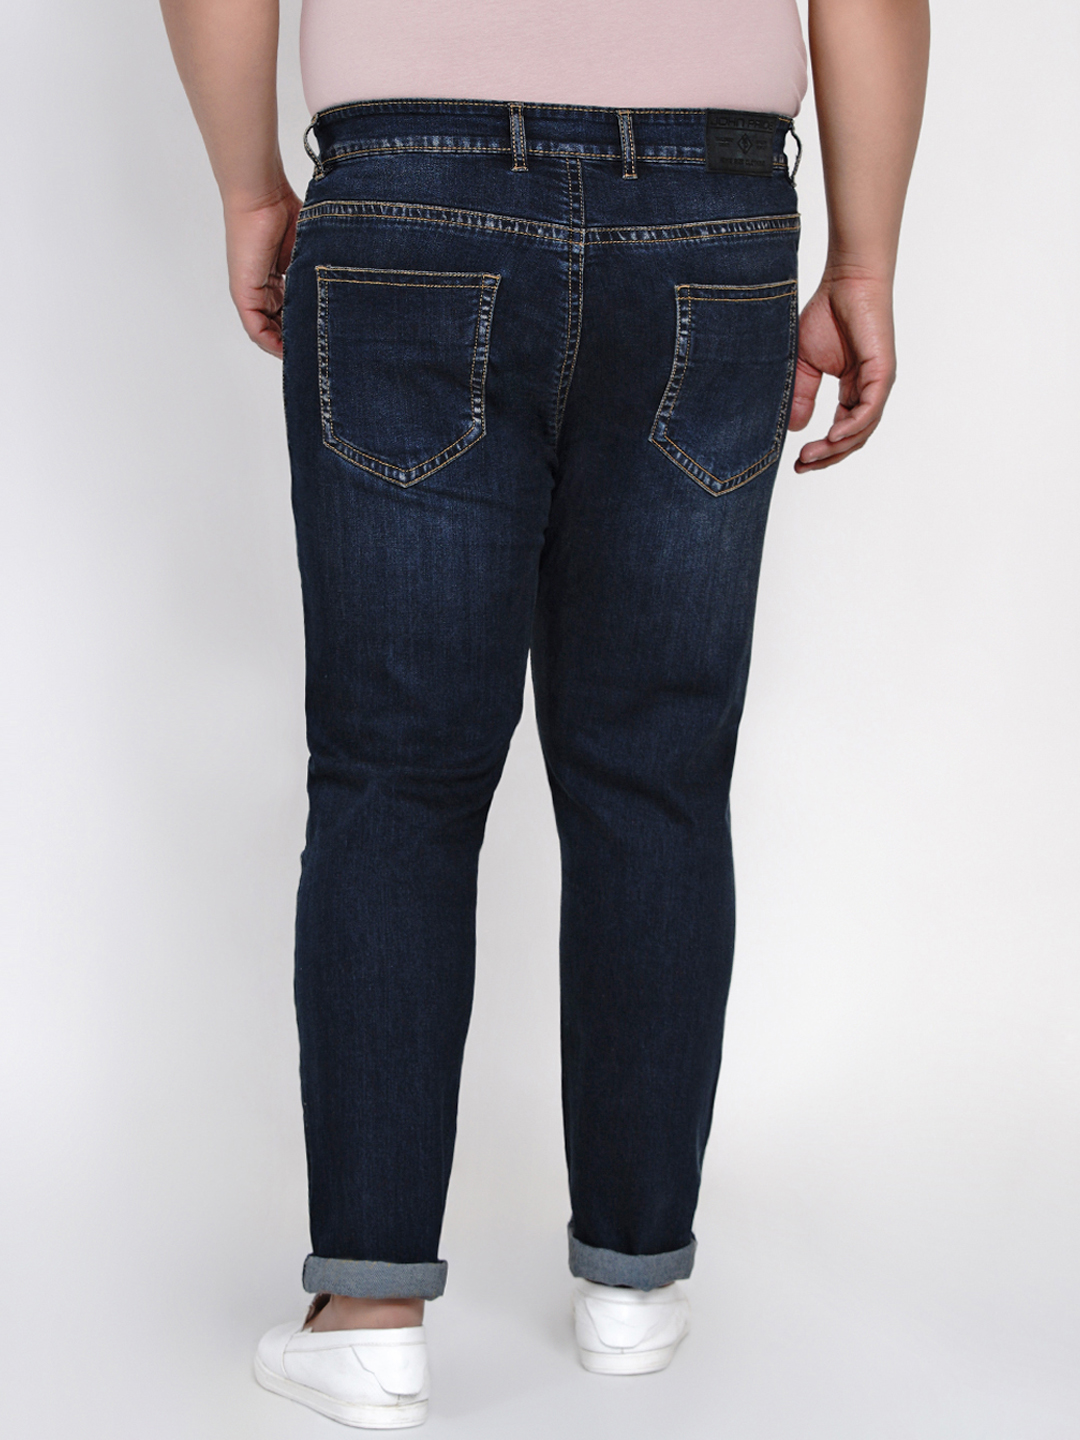 bottomwear/jeans/JPJ12123/jpj12123-5.jpg